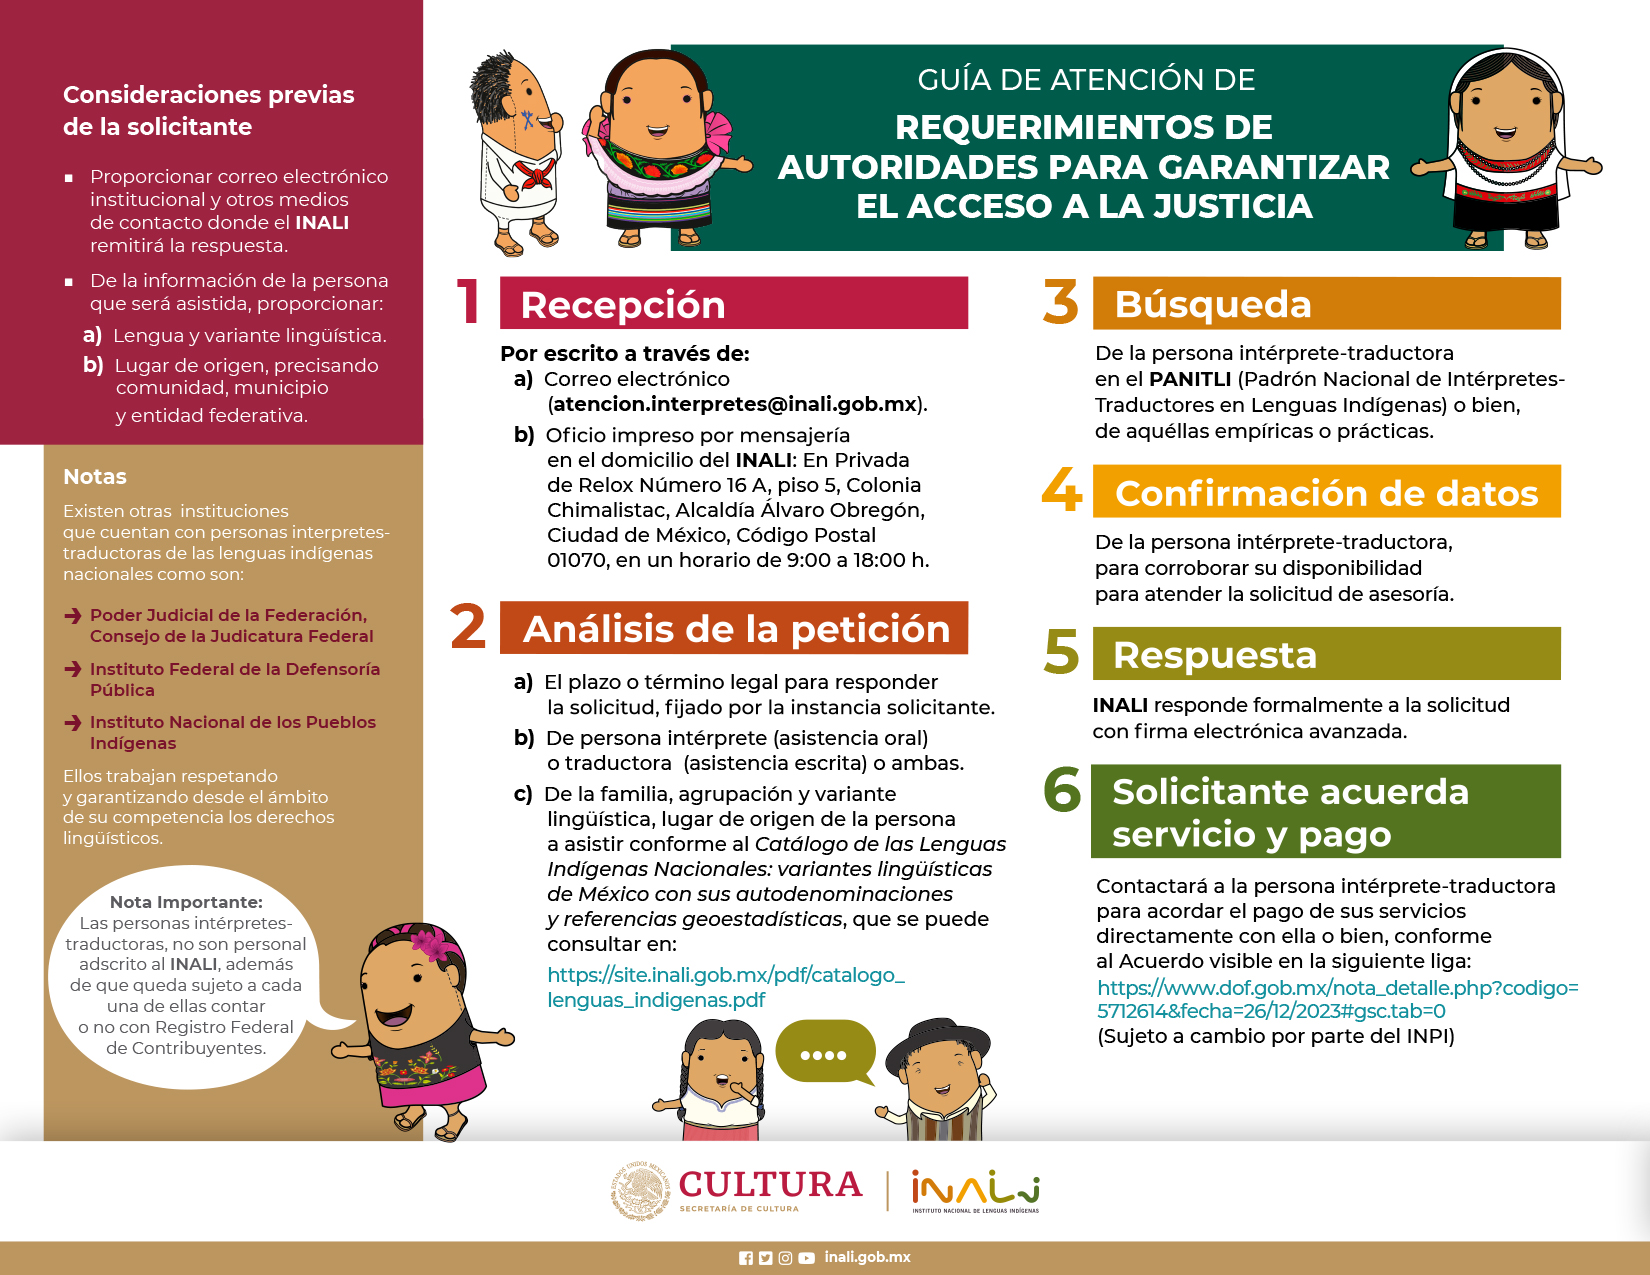 Guía de atención a solicitudes de personas intérpretes traductoras en lenguas indígenas